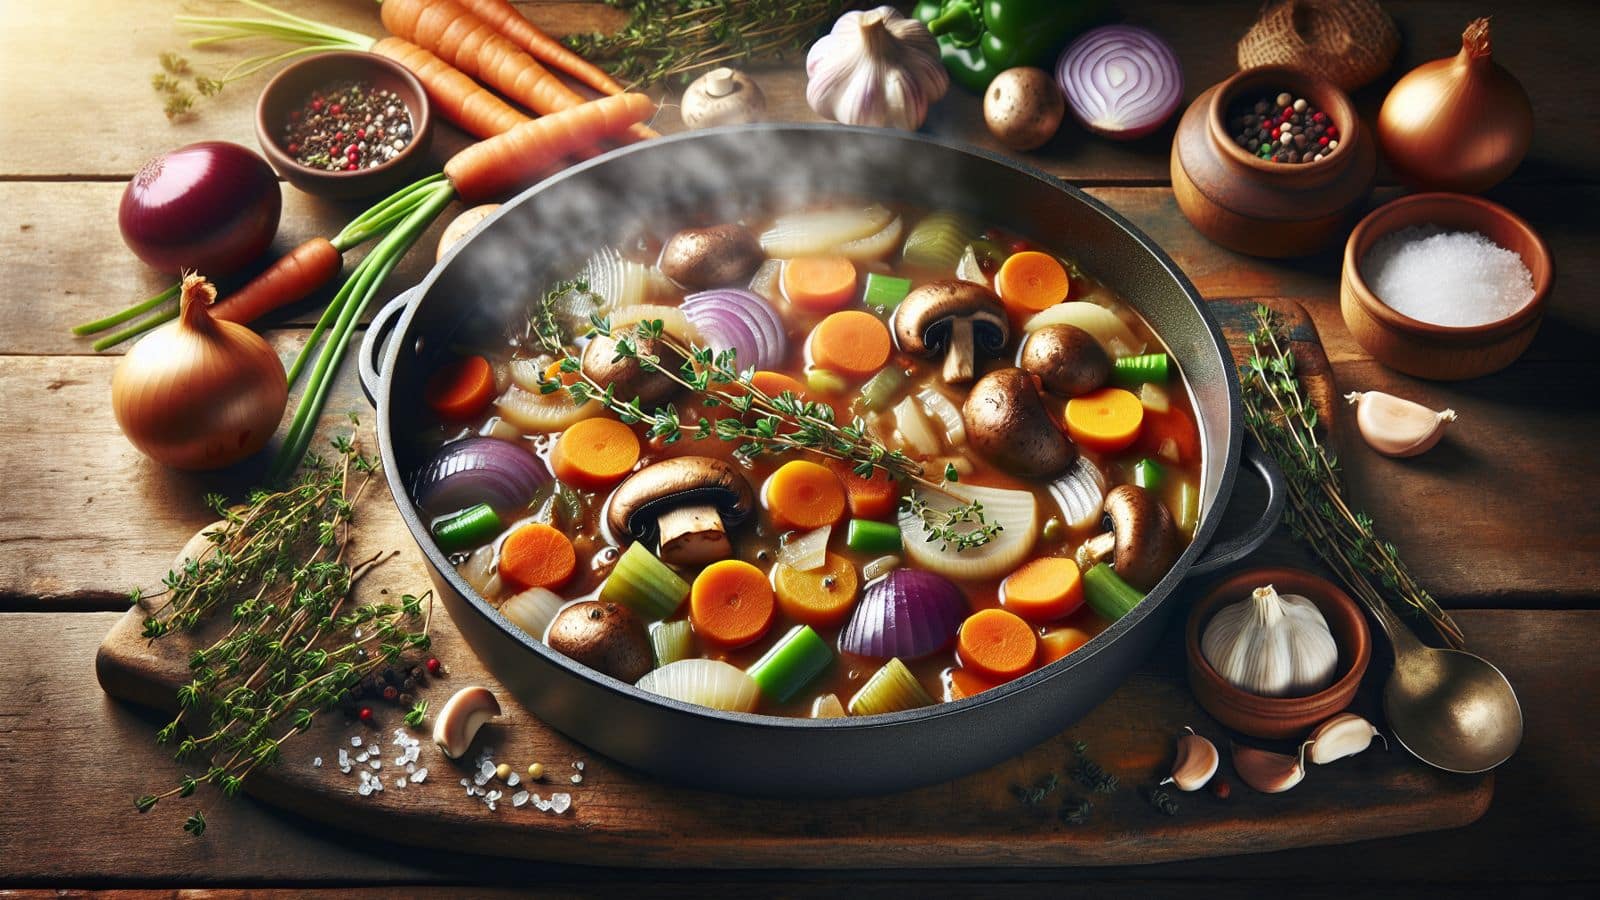 It's recipe time! Cook this vegan Belgian stoofvlees stew